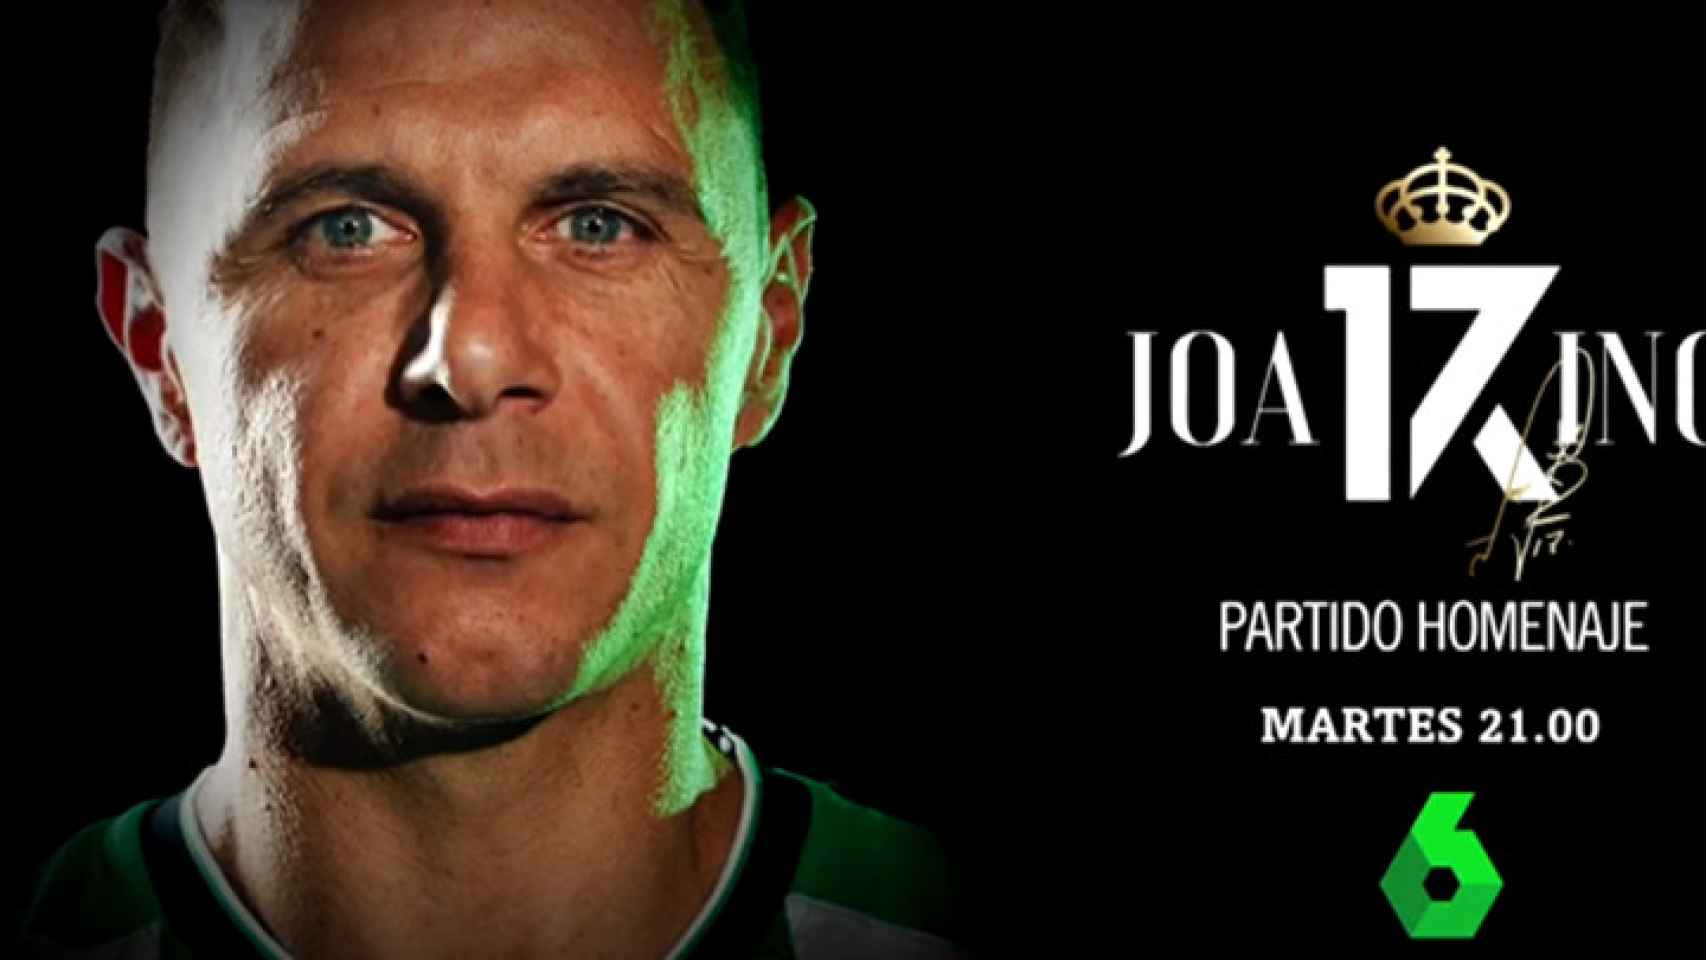 El 'last dance' de Joaquín:  laSexta emite el partido homenaje al futbolista del Real Betis este martes